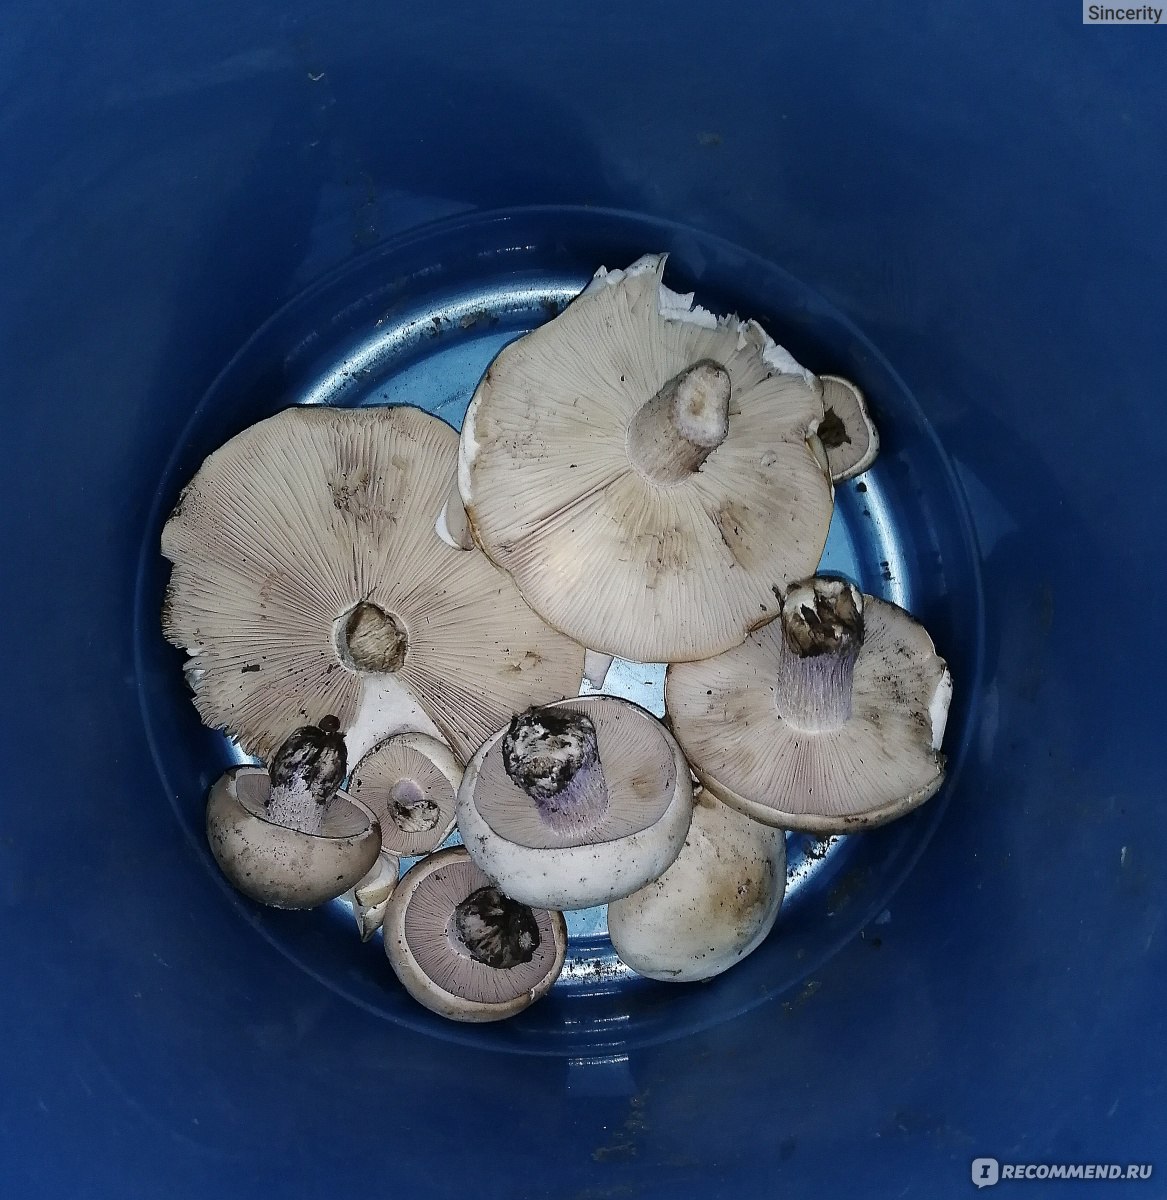 Как выглядит гриб синеножка и его описание (+18 фото)